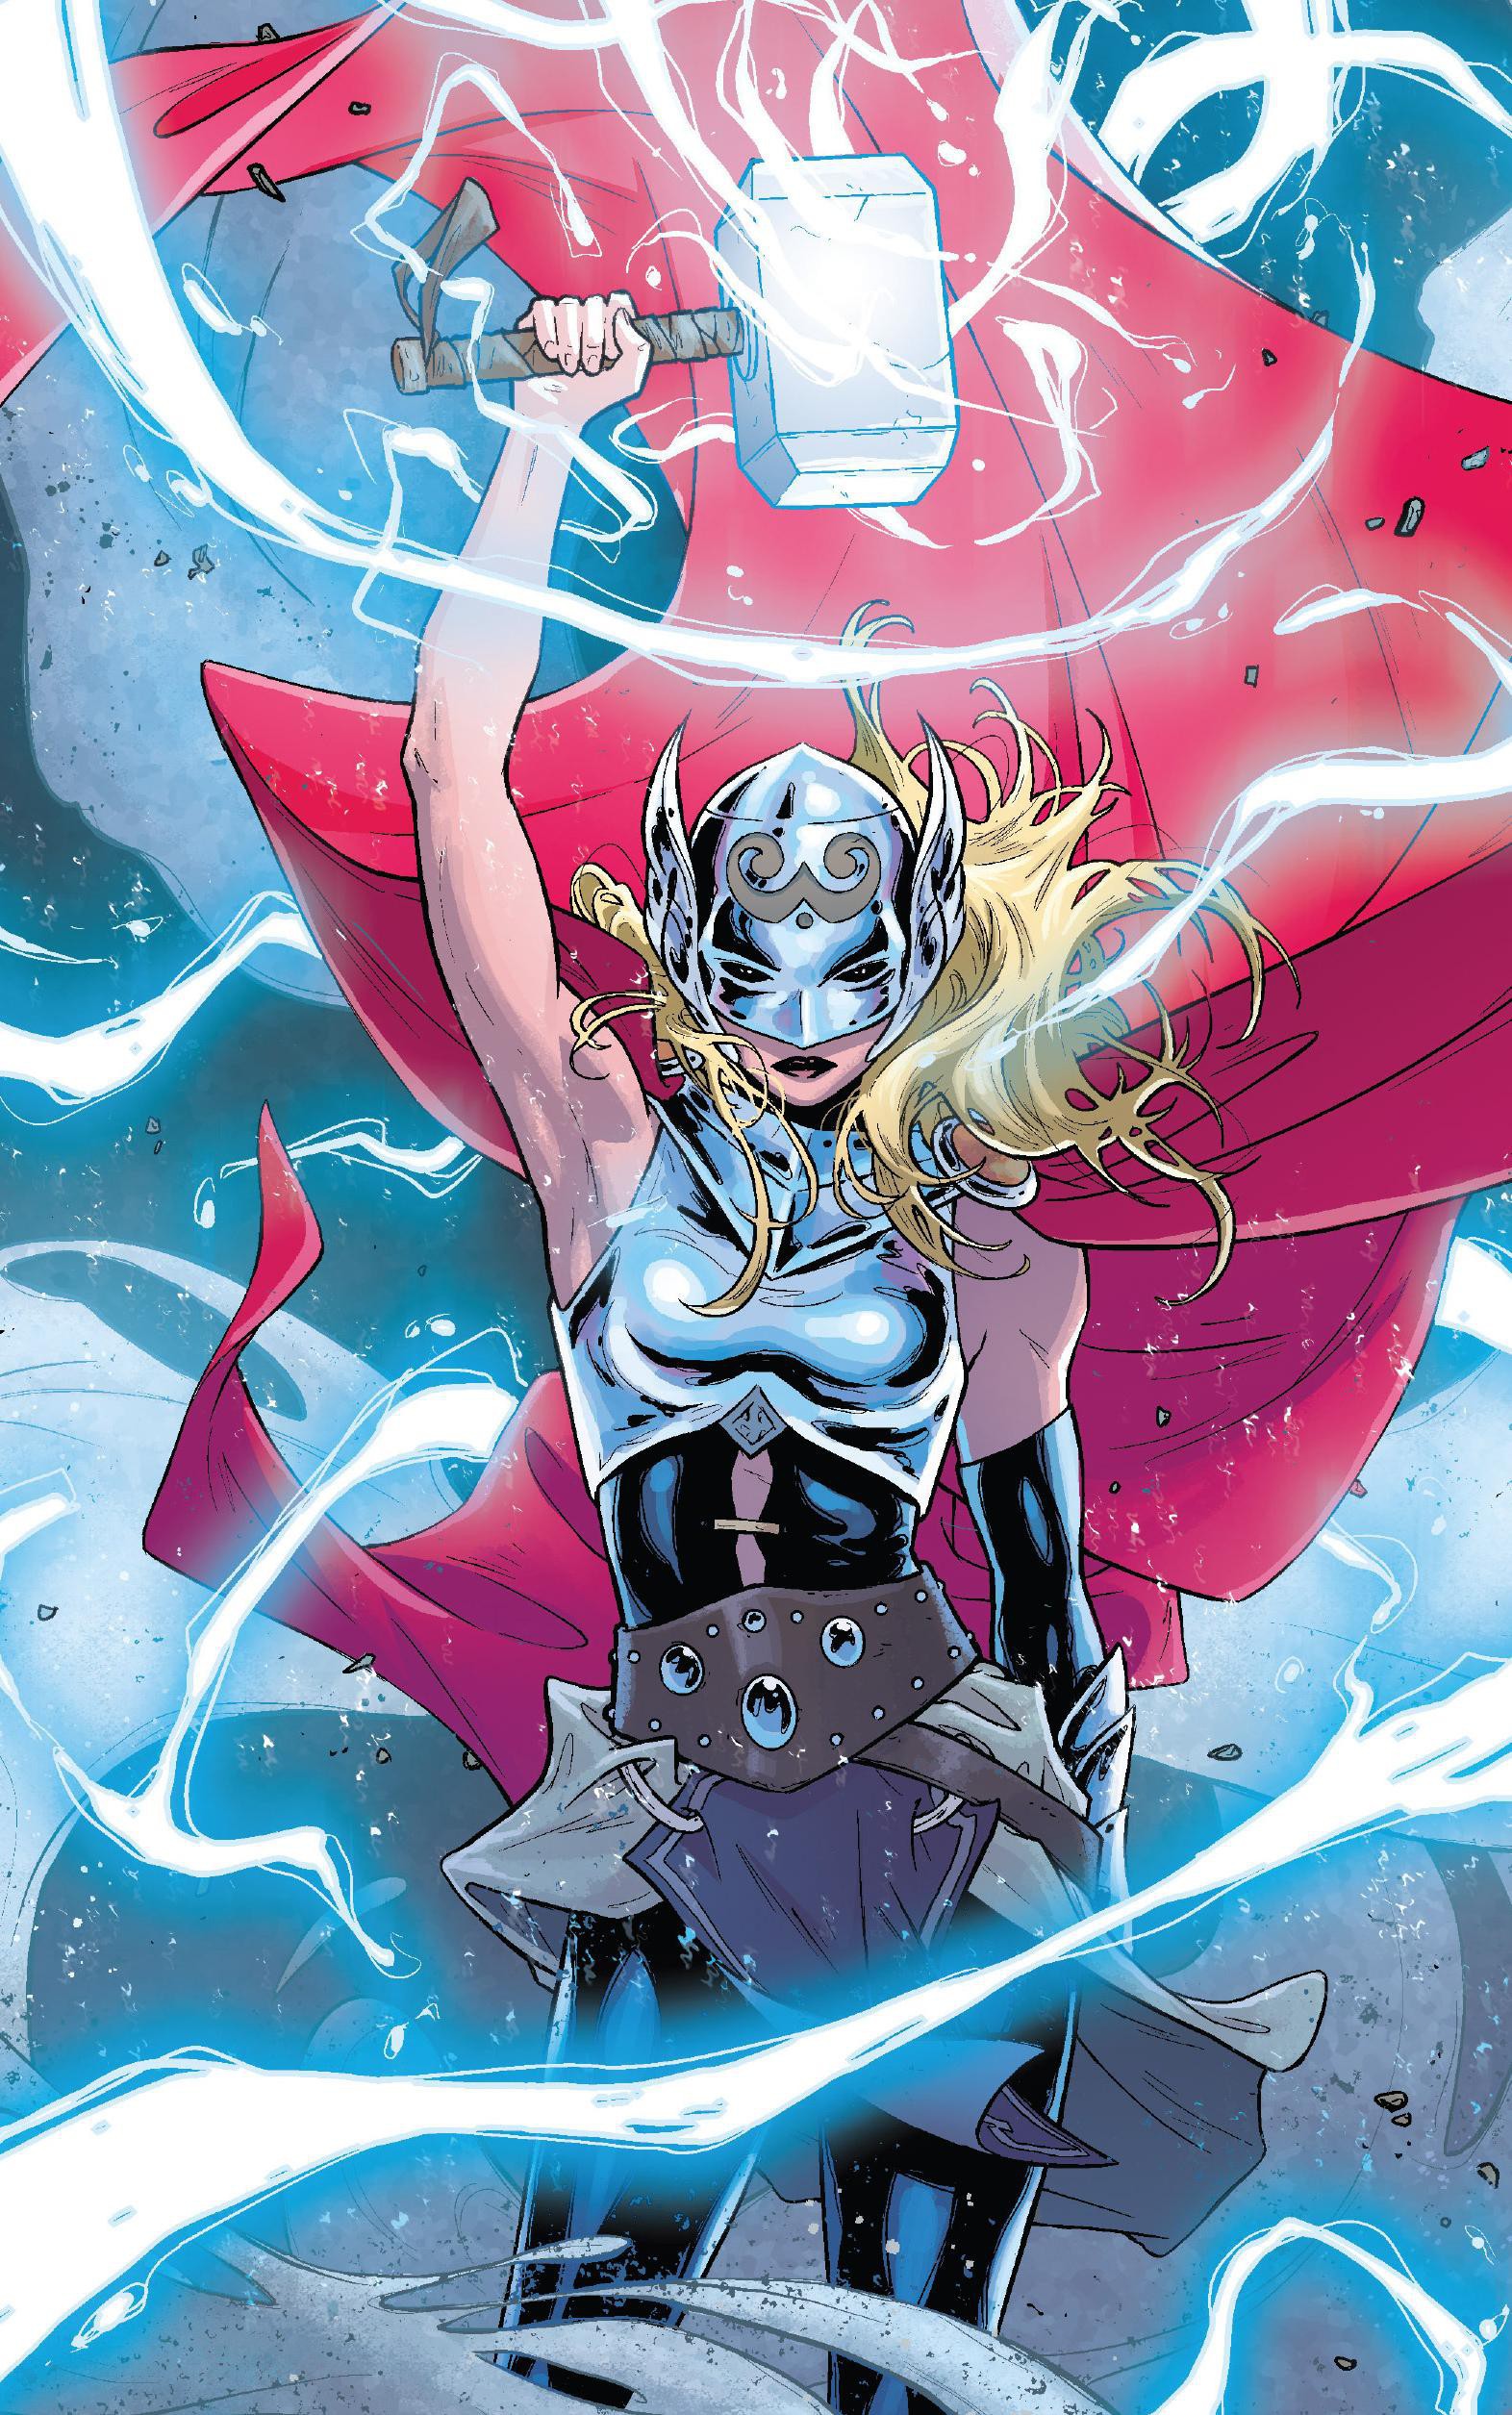 6 phiên bản khác nhau của Thor trong truyện tranh Marvel có thể lên phim